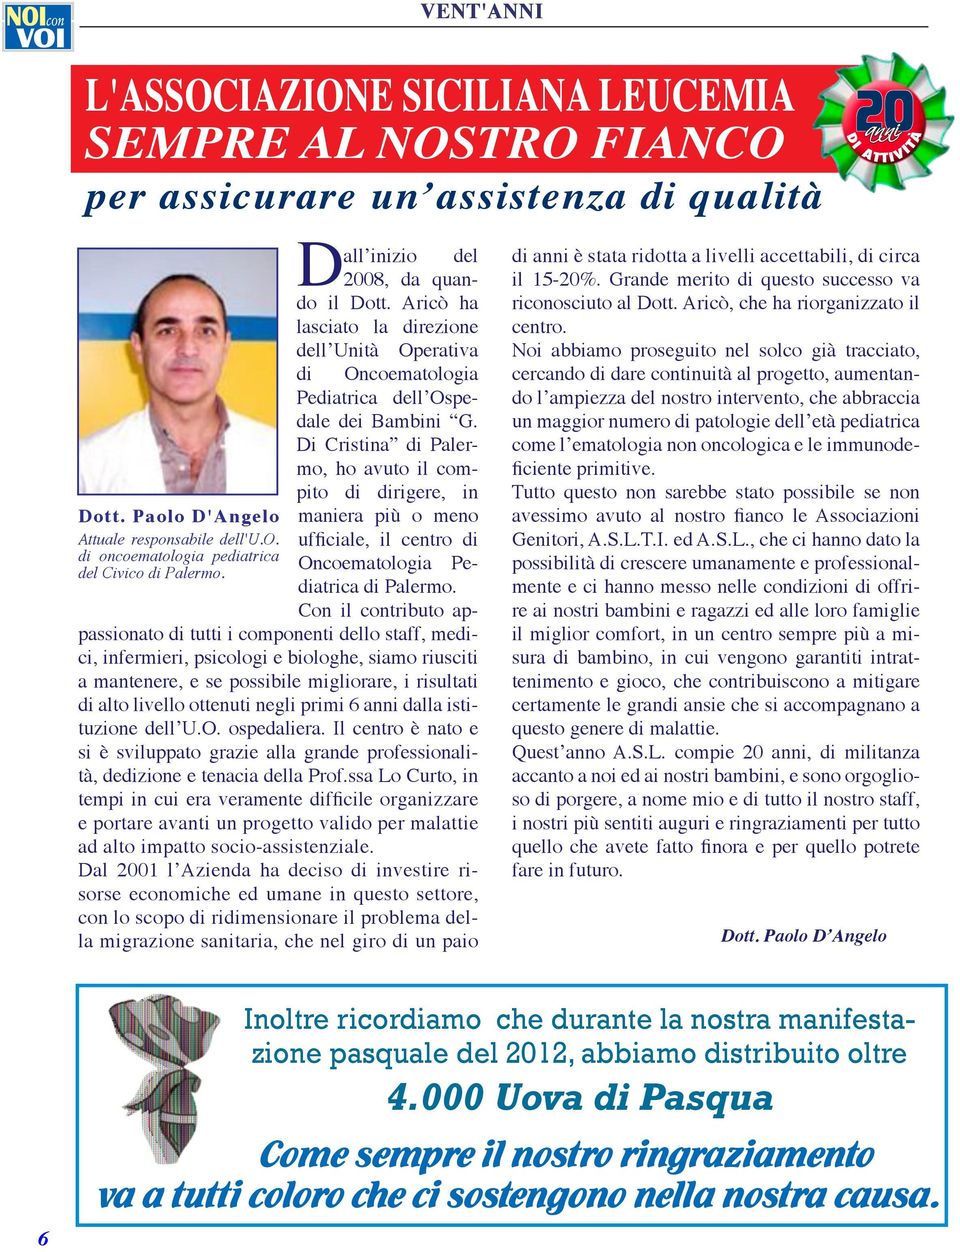 Di Cristina di Palermo, ho avuto il compito di dirigere, in maniera più o meno Oncoematologia Pediatrica di Palermo.